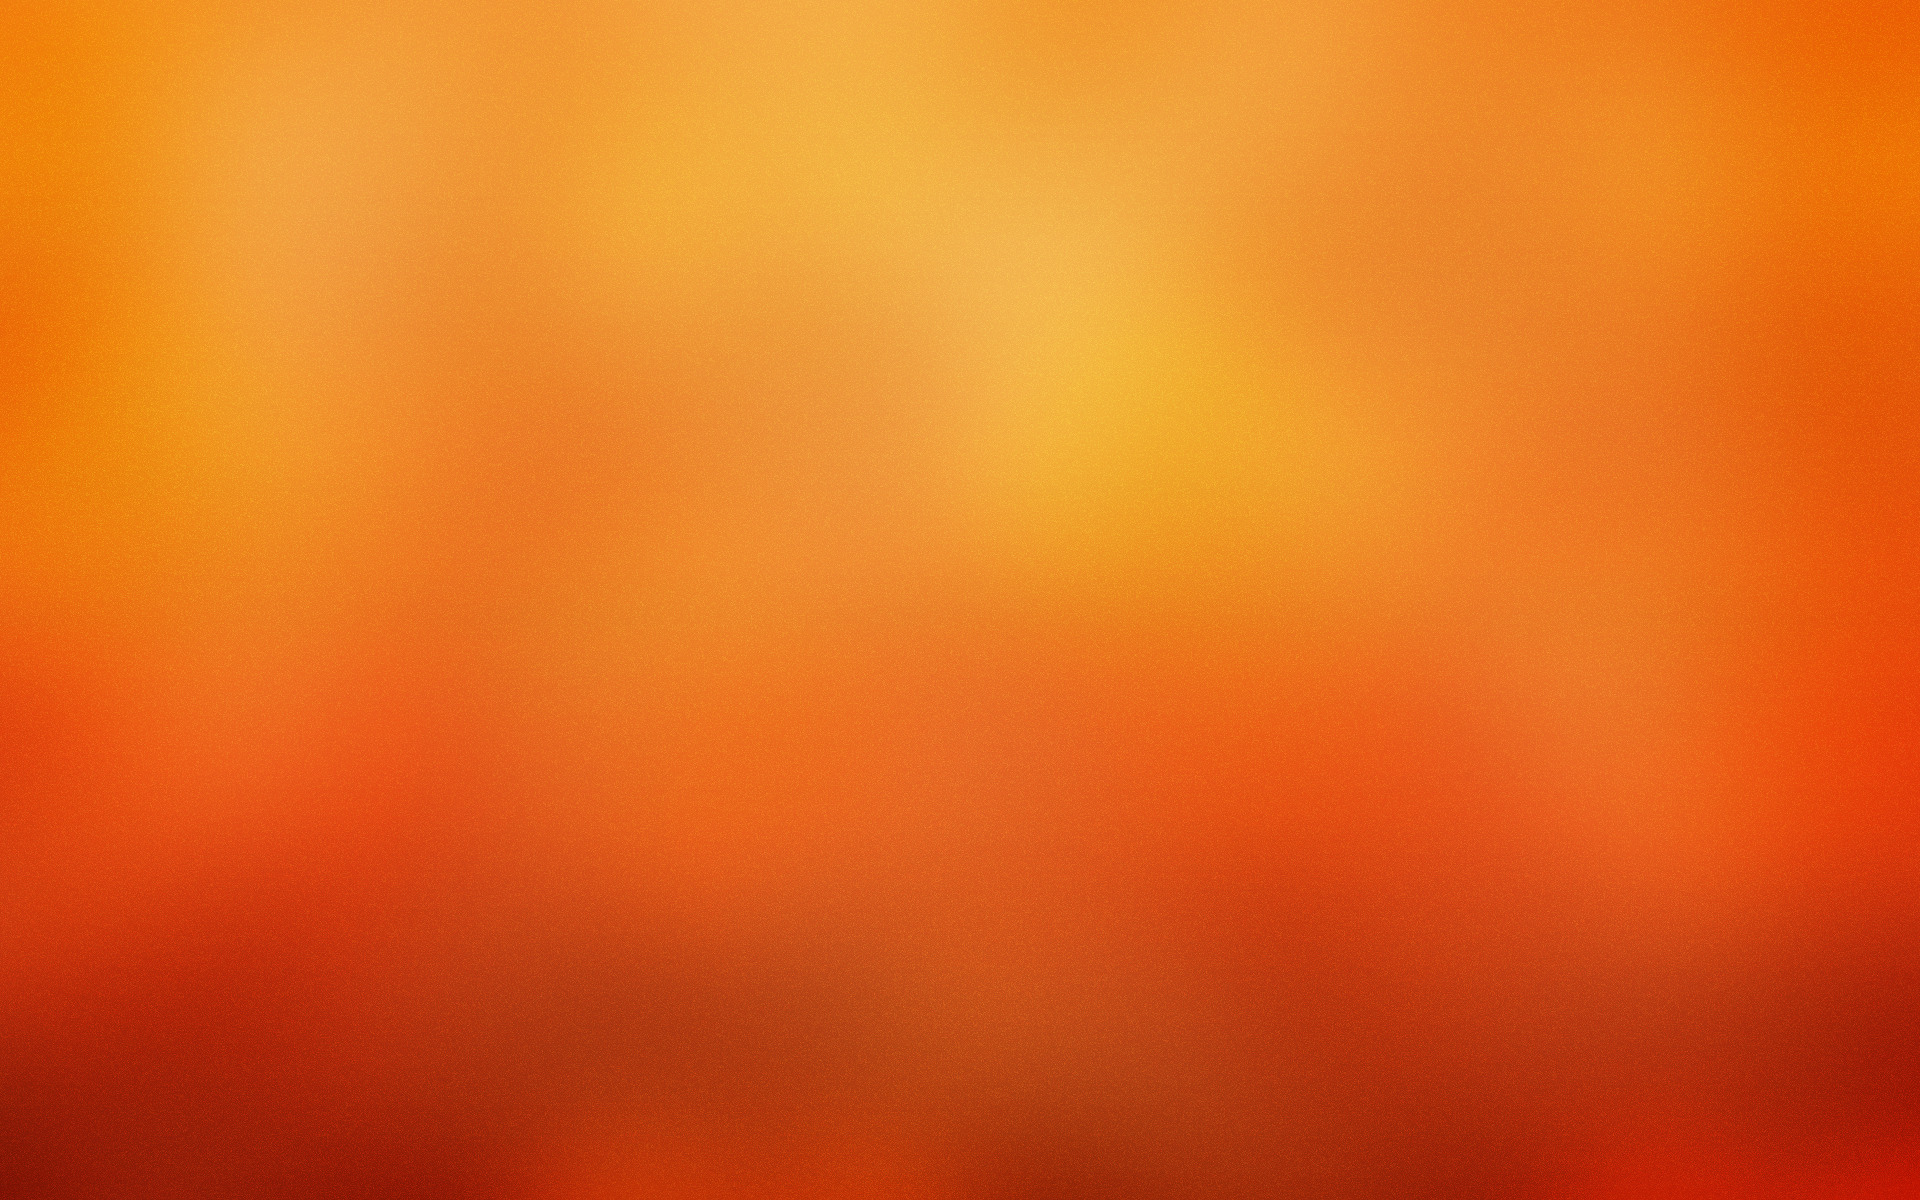 gaussian blur - desktop wallpaper